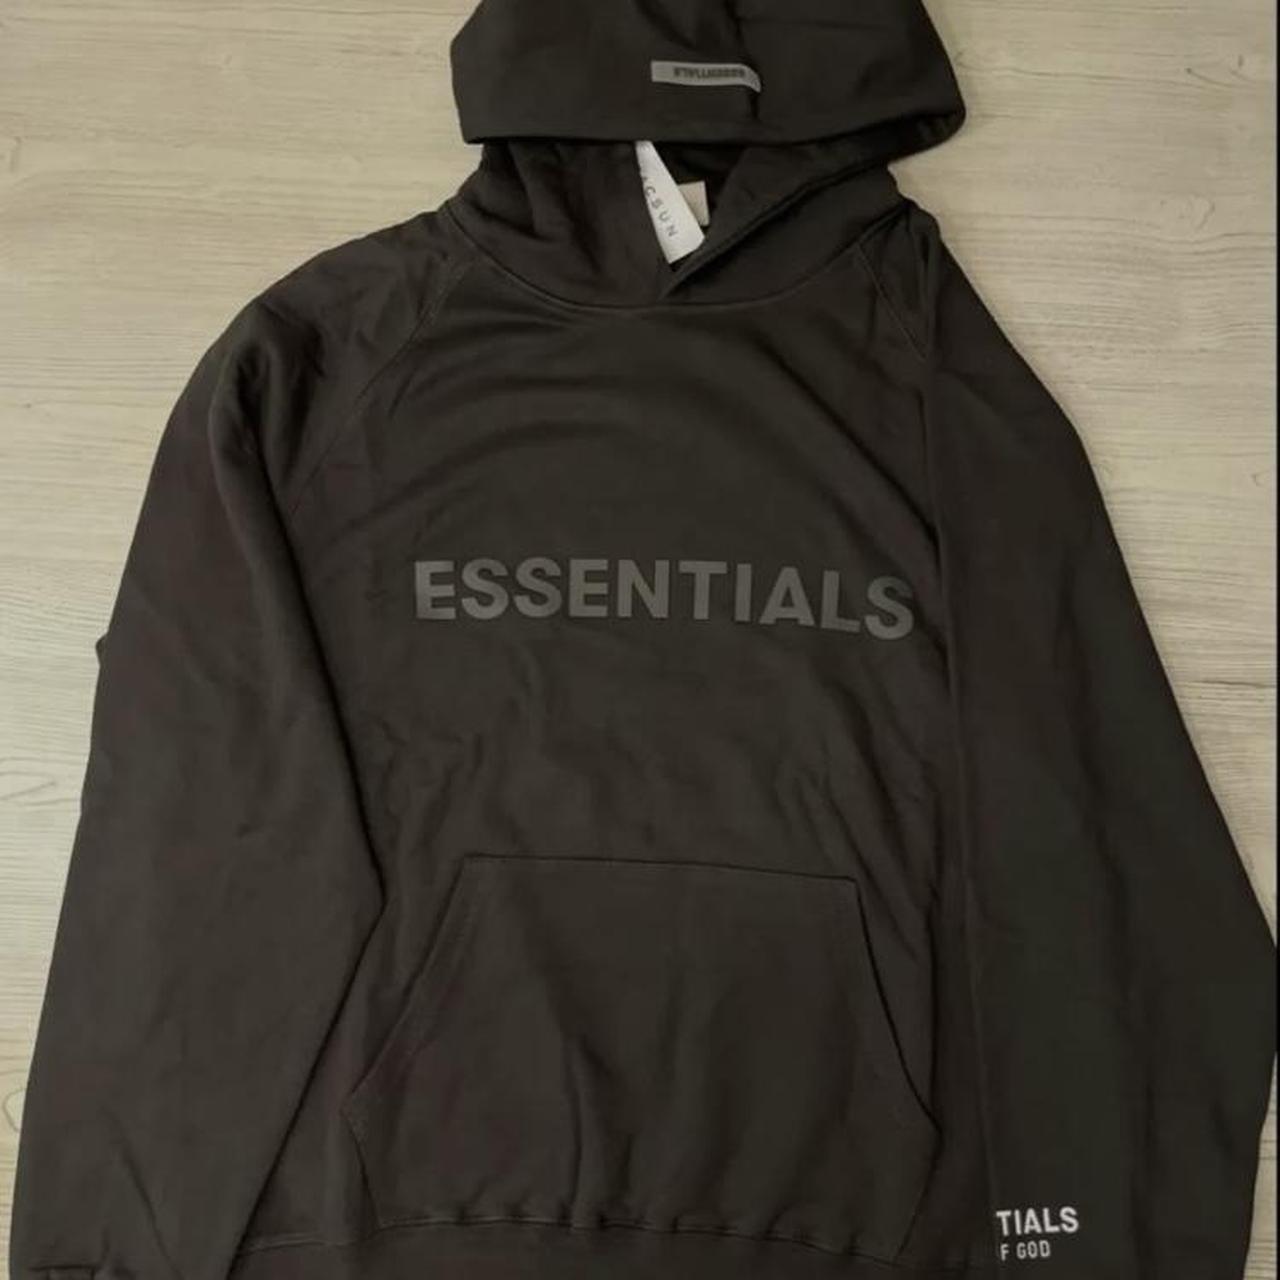 Black Essentials Hoodie brand new #essentials - Depop